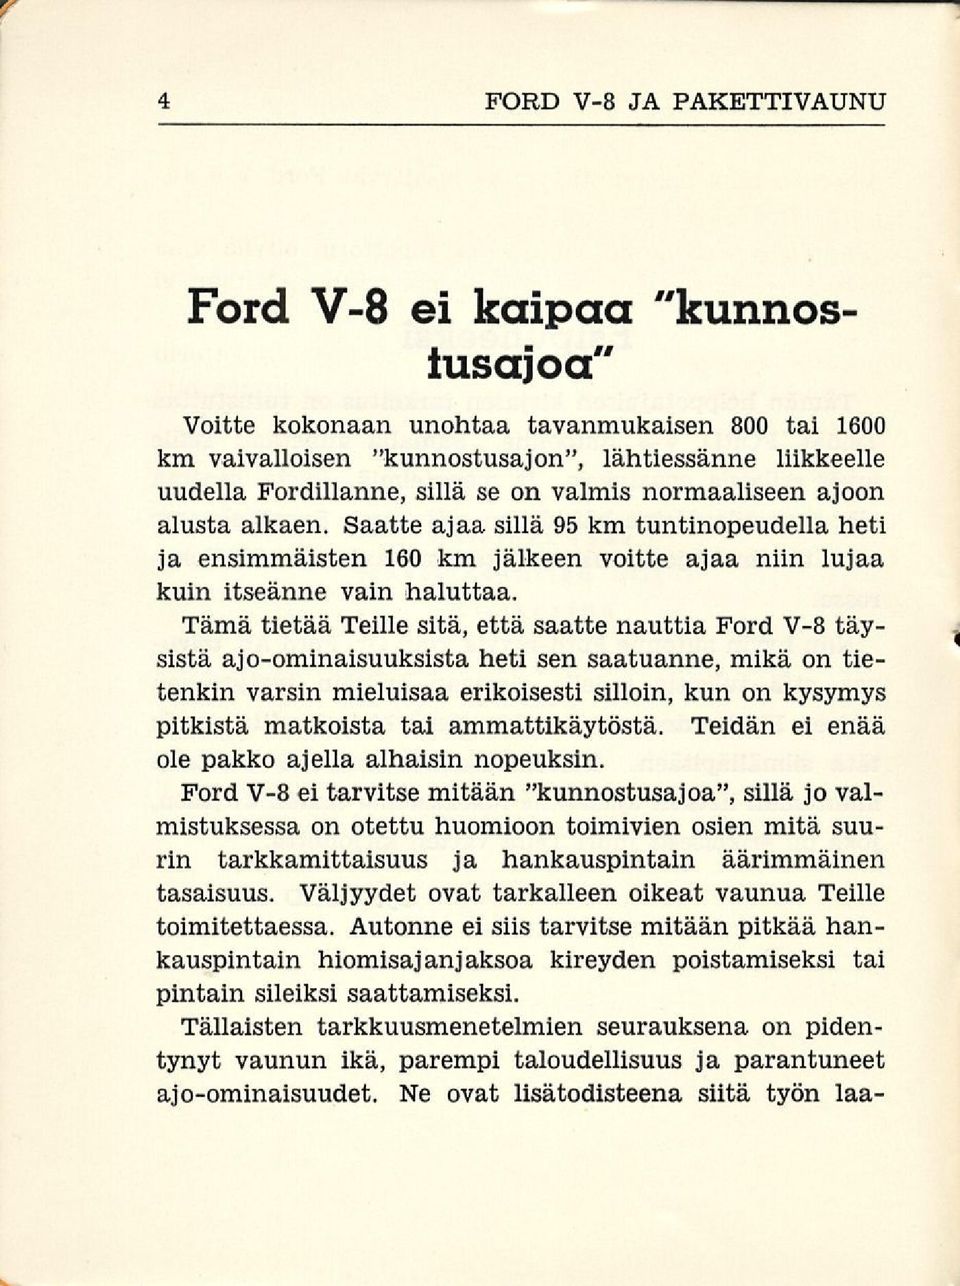 Tämä tietää Teille sitä, että saatte nauttia Ford V-8 täysistä ajo-ominaisuuksista heti sen saatuanne, mikä on tietenkin varsin mieluisaa erikoisesti silloin, kun on kysymys pitkistä matkoista tai